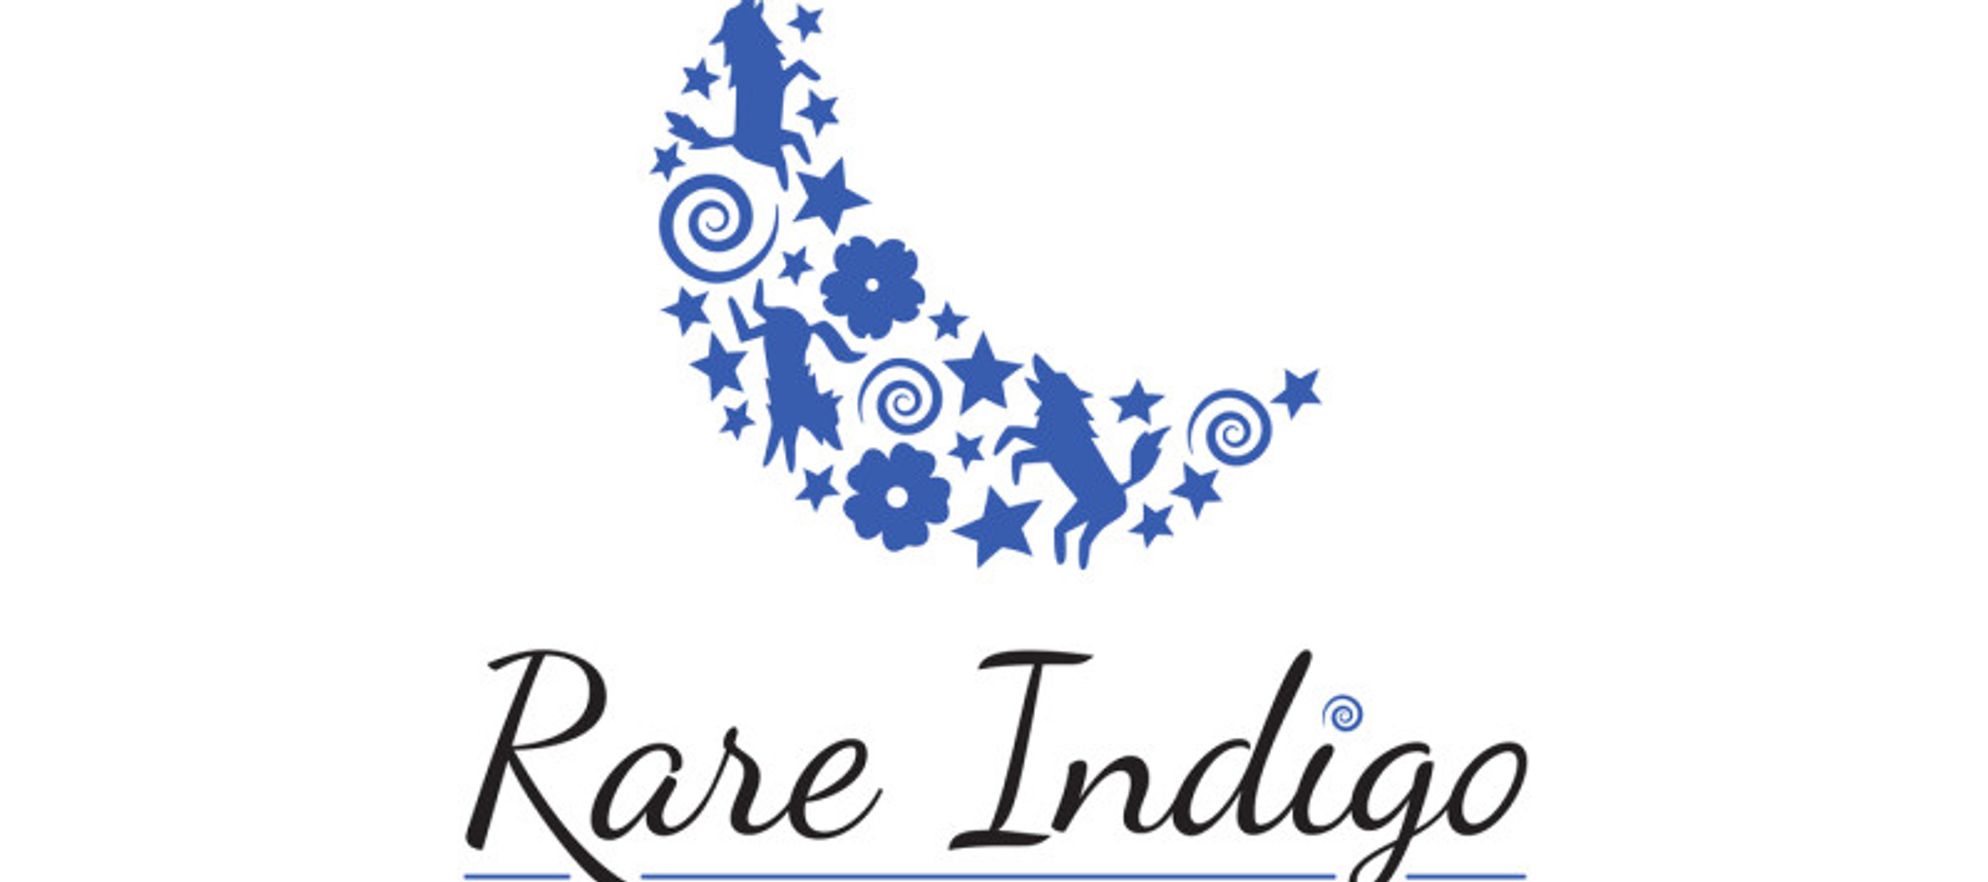 Rare Indigo Ventures Inc. DMC